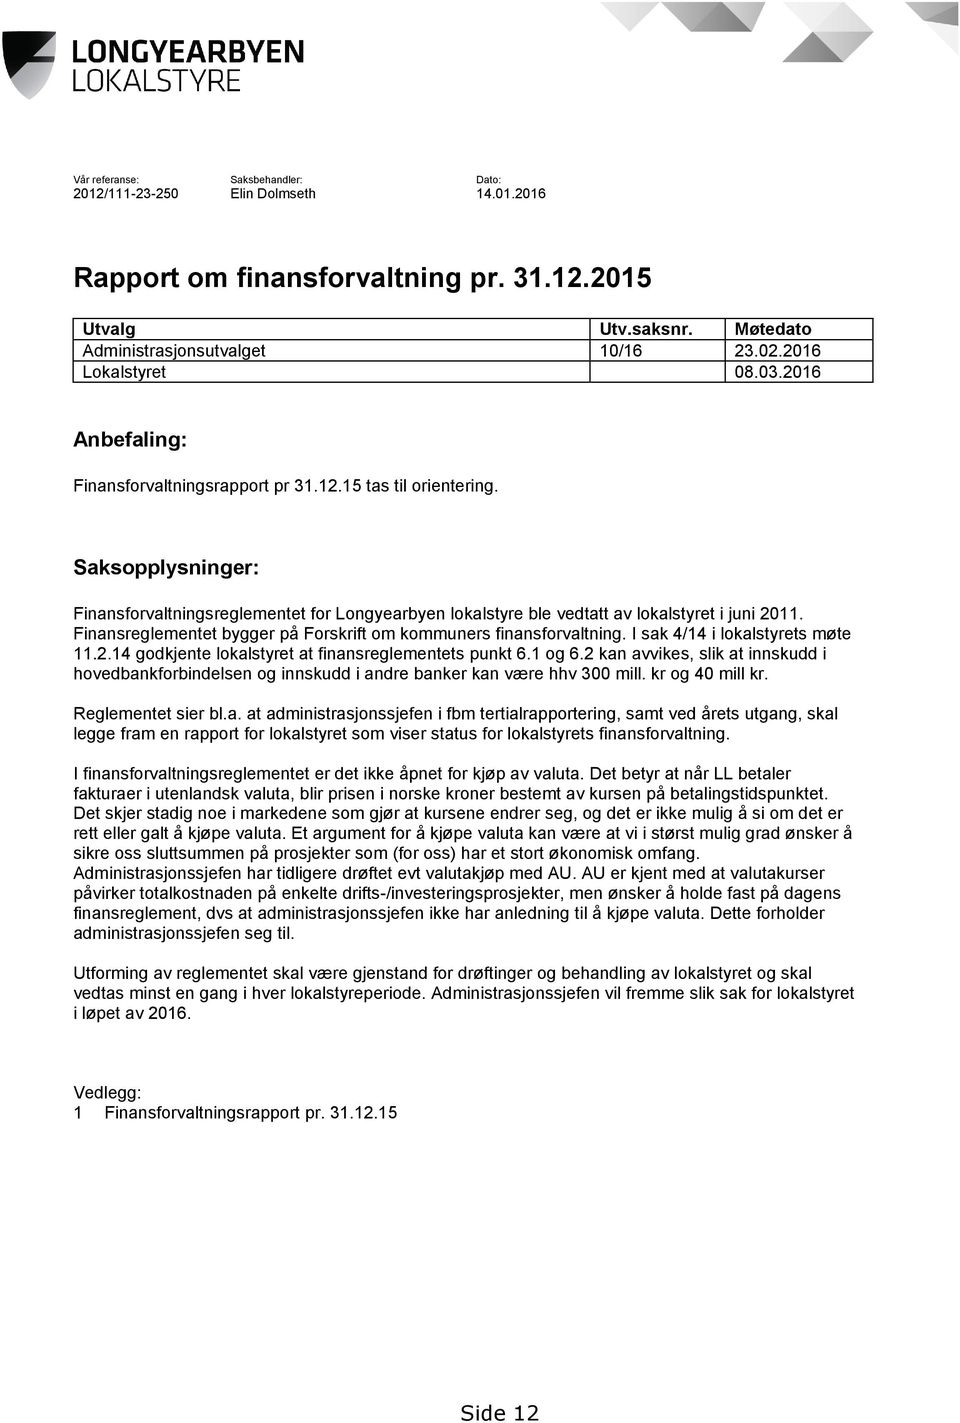 Saksopplysninger: Finansforvaltningsreglementet for Longyearbyen lokalstyre ble vedtatt av lokalstyret i juni 2011. Finansreglementet bygger på Forskrift om kommuners finansforvaltning.